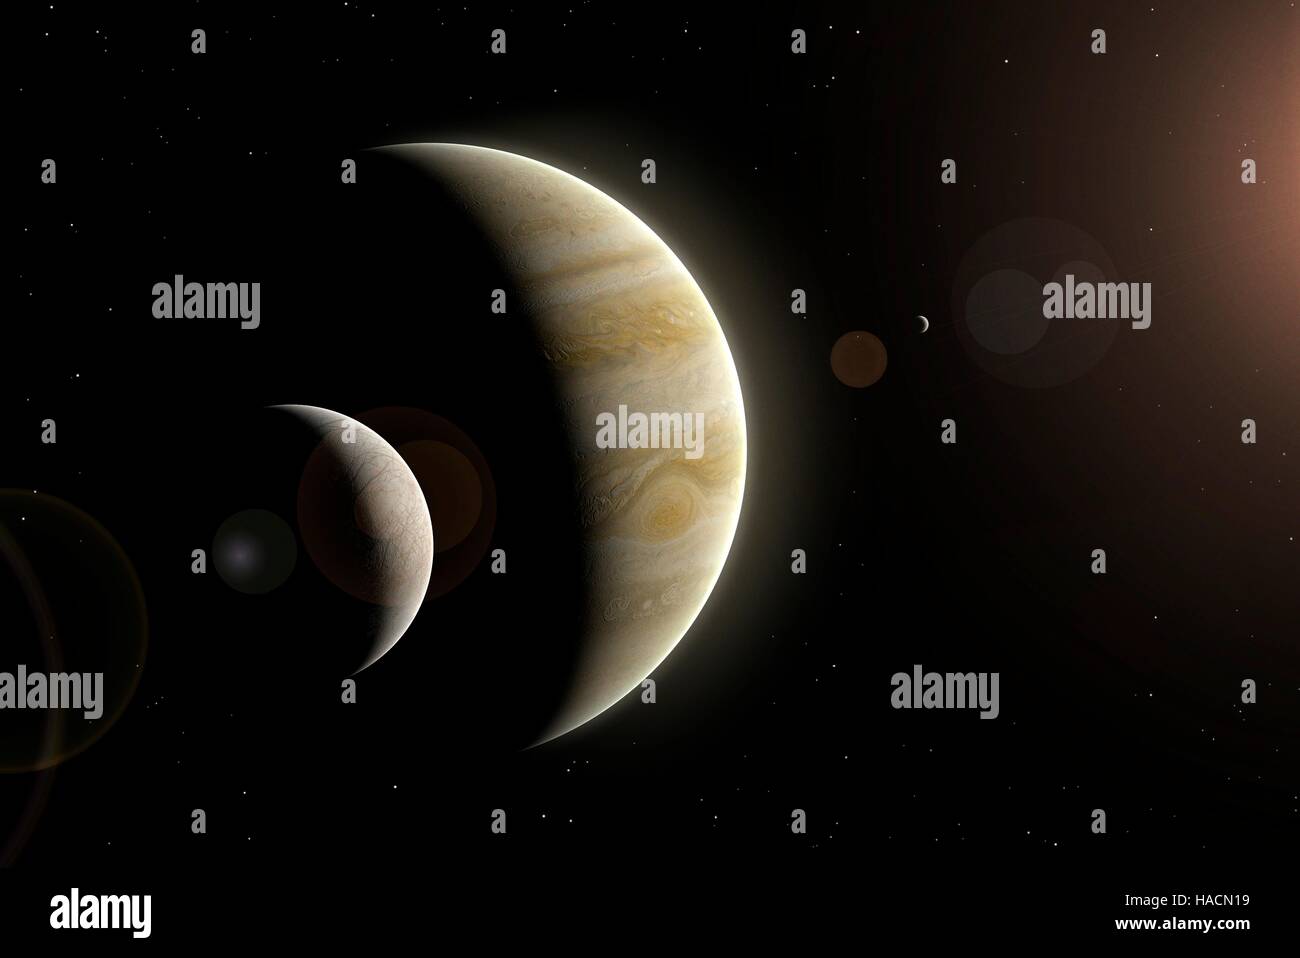 Illustration de Jupiter et de deux de ses plus gros satellites, Europa (à gauche) et Io (à droite). Europa est la plus petite des quatre lunes galiléennes de Jupiter, et la deuxième penderie à la planète. Sa surface est relativement lisse et glacée. Répercussions sur les météorites causer la fonte de la surface, permettant à l'eau pour lisser avant de geler. Io est plus proche, dans un monde volcanique, son intérieur chauffée par les forces de marée de Jupiter. Banque D'Images